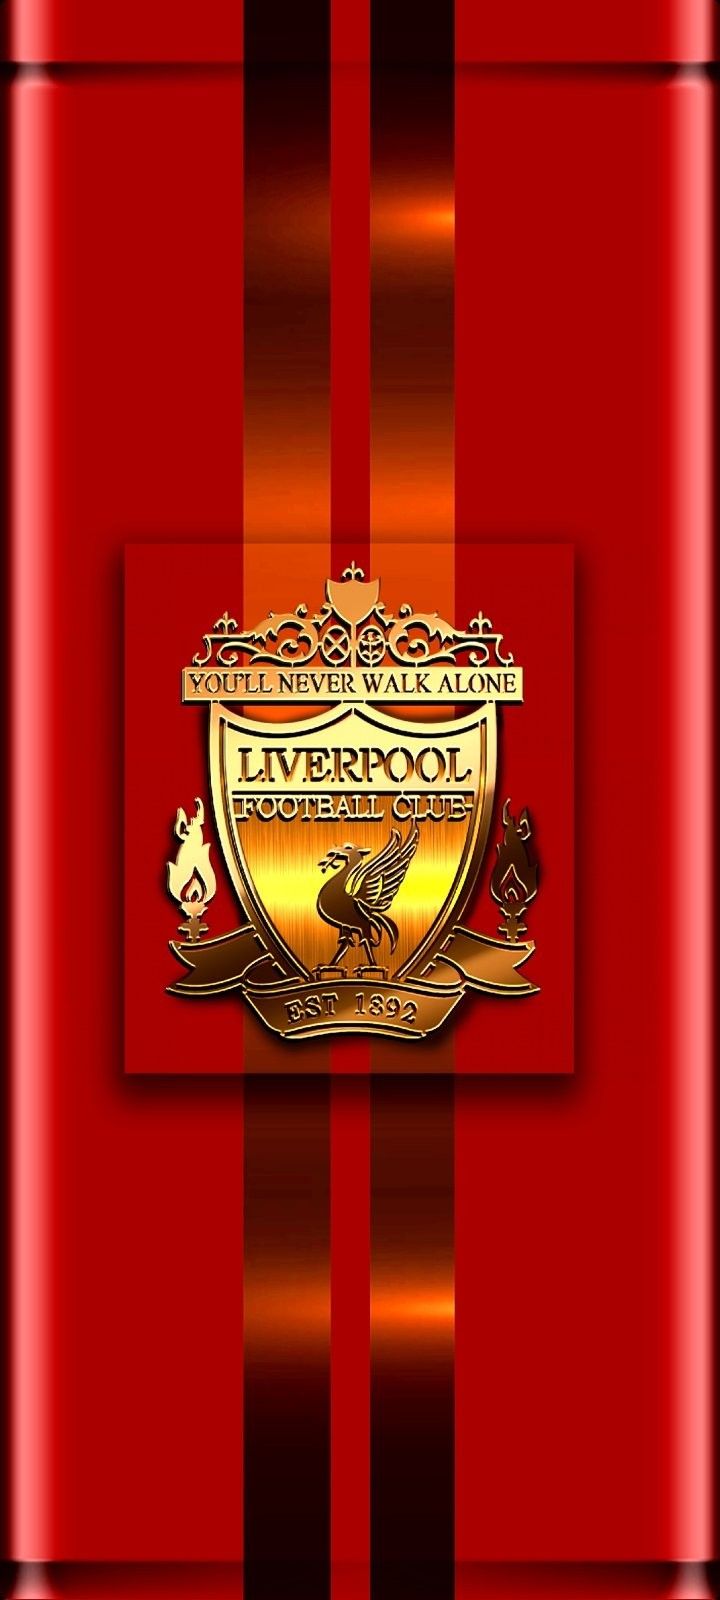 สโมสรฟุตบอลลิเวอร์พูล. Liverpool football club wallpaper, Liverpool football club, Liverpool football